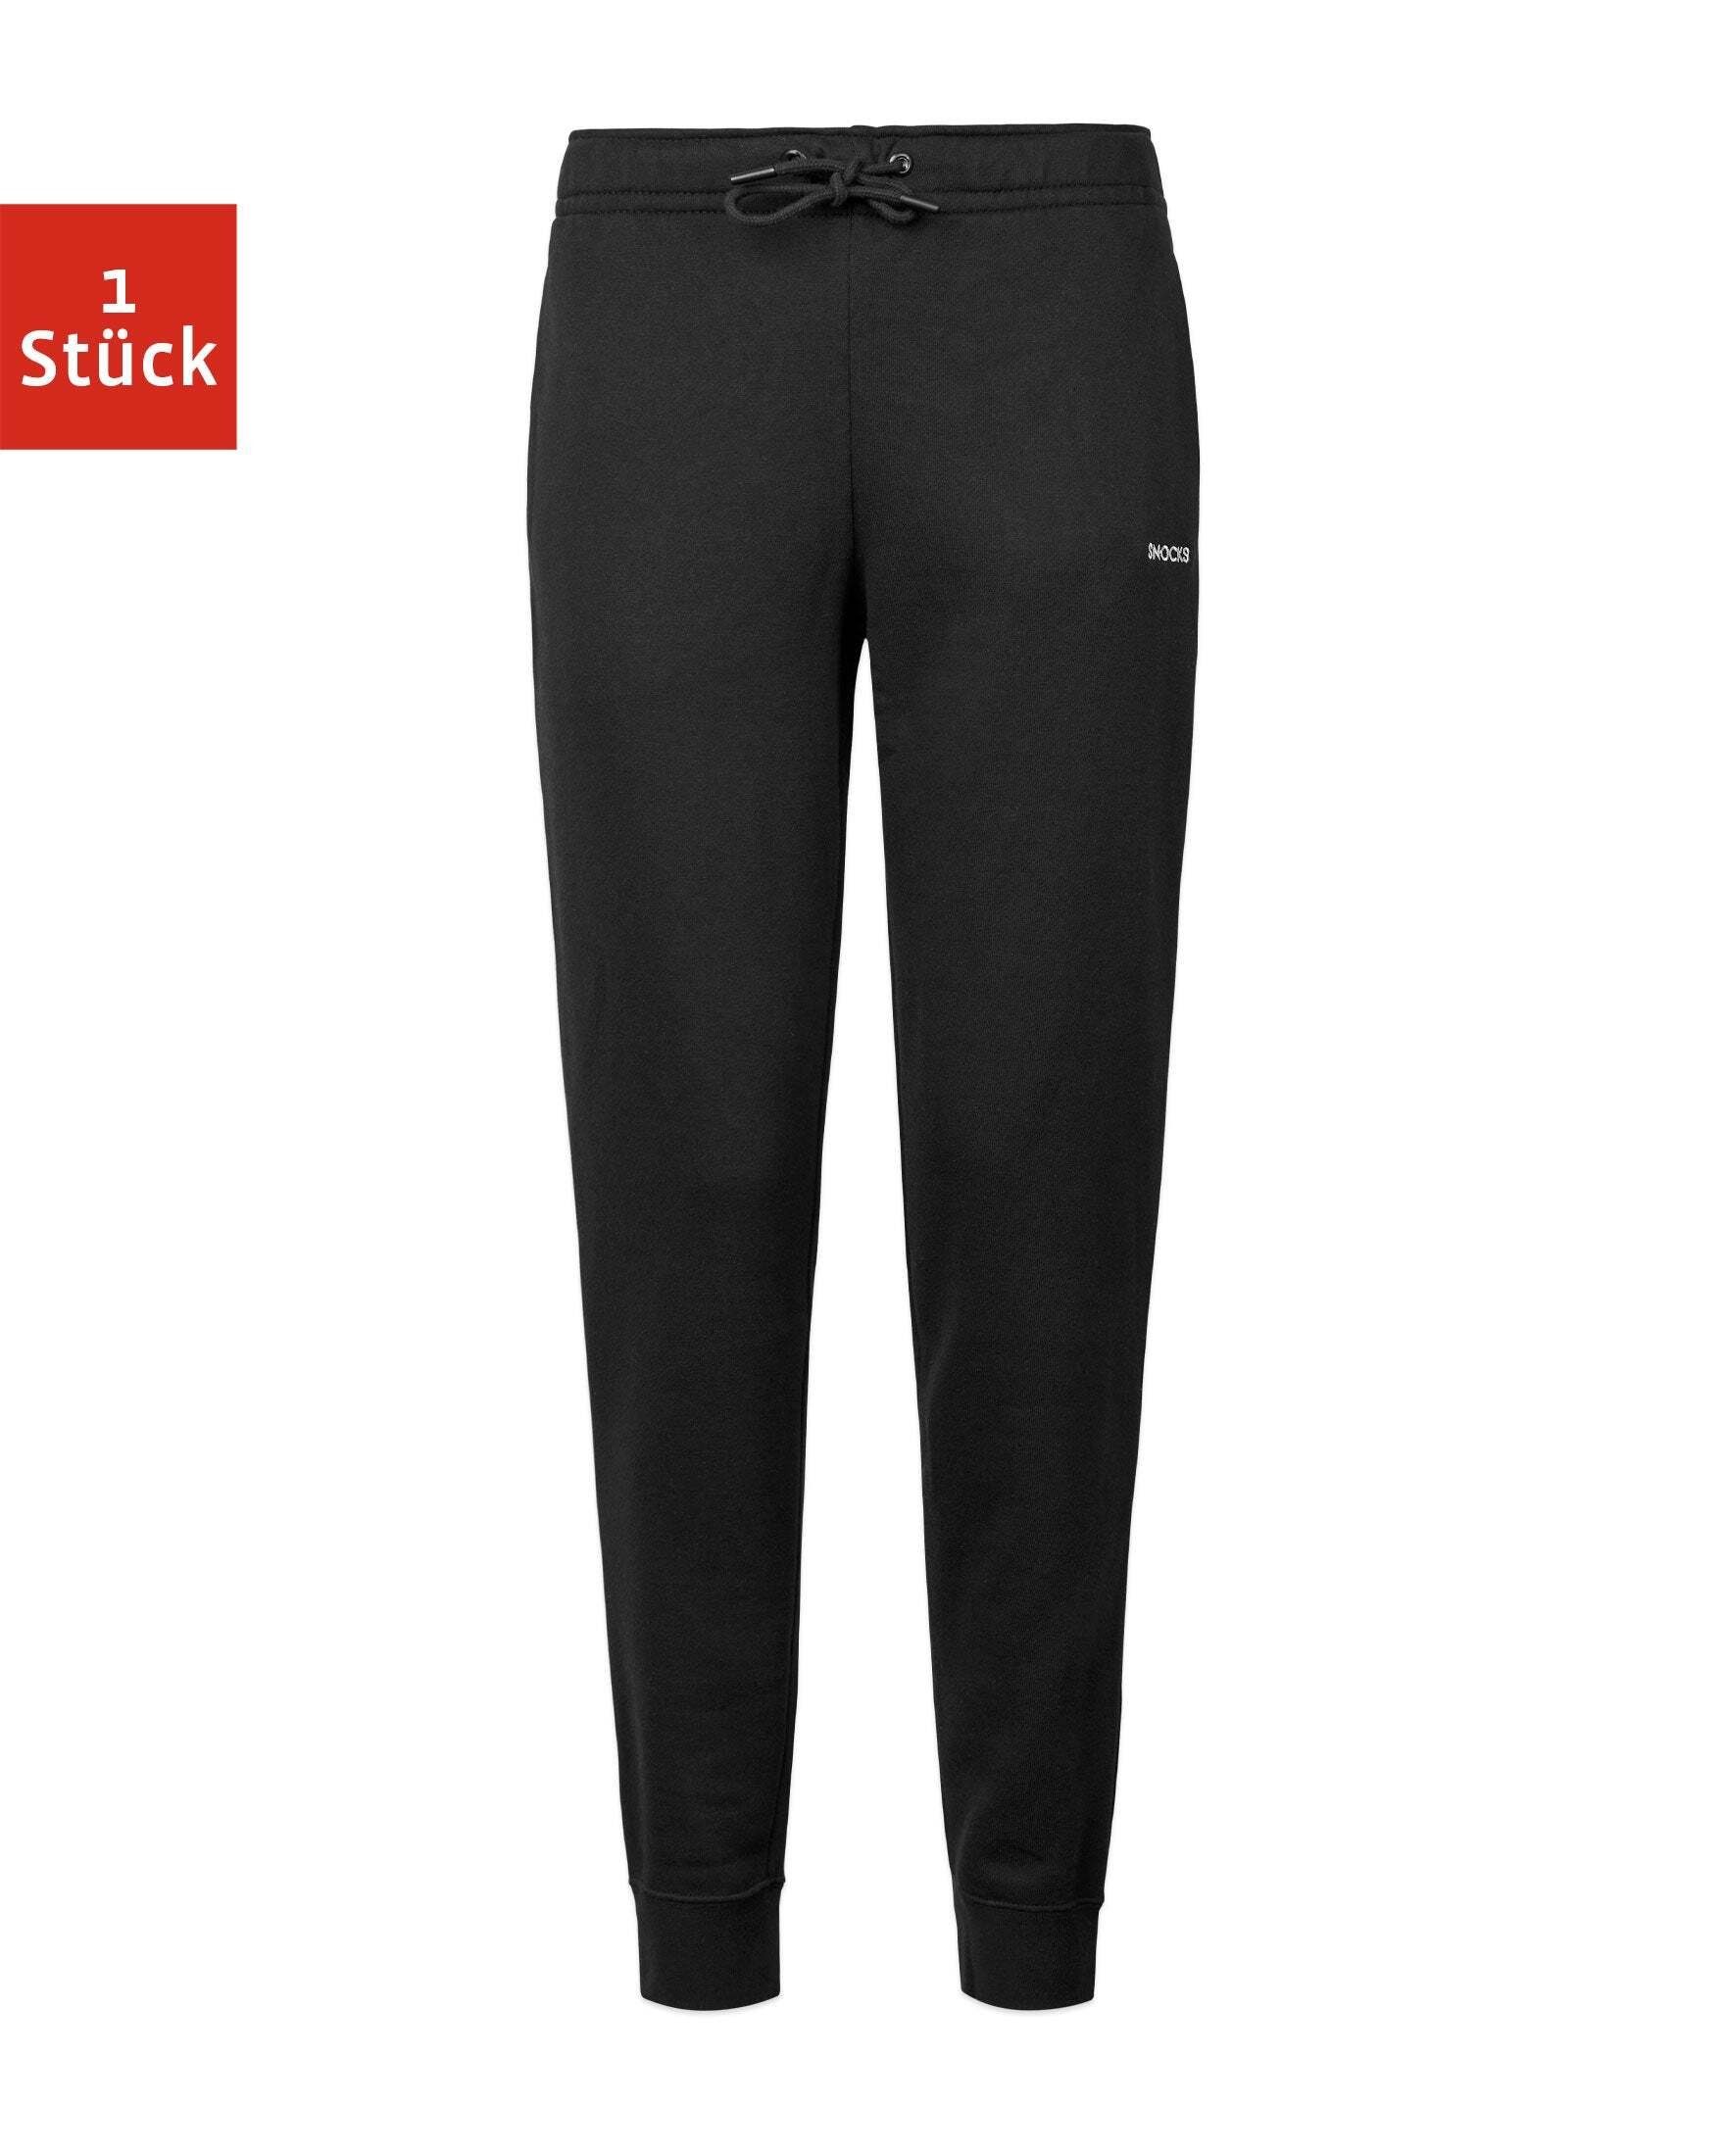 SNOCKS Highwaist Leggings Jogginghose Damen Sweatpants (1-tlg) weich von innen, mit Rippbund am Beinsaum